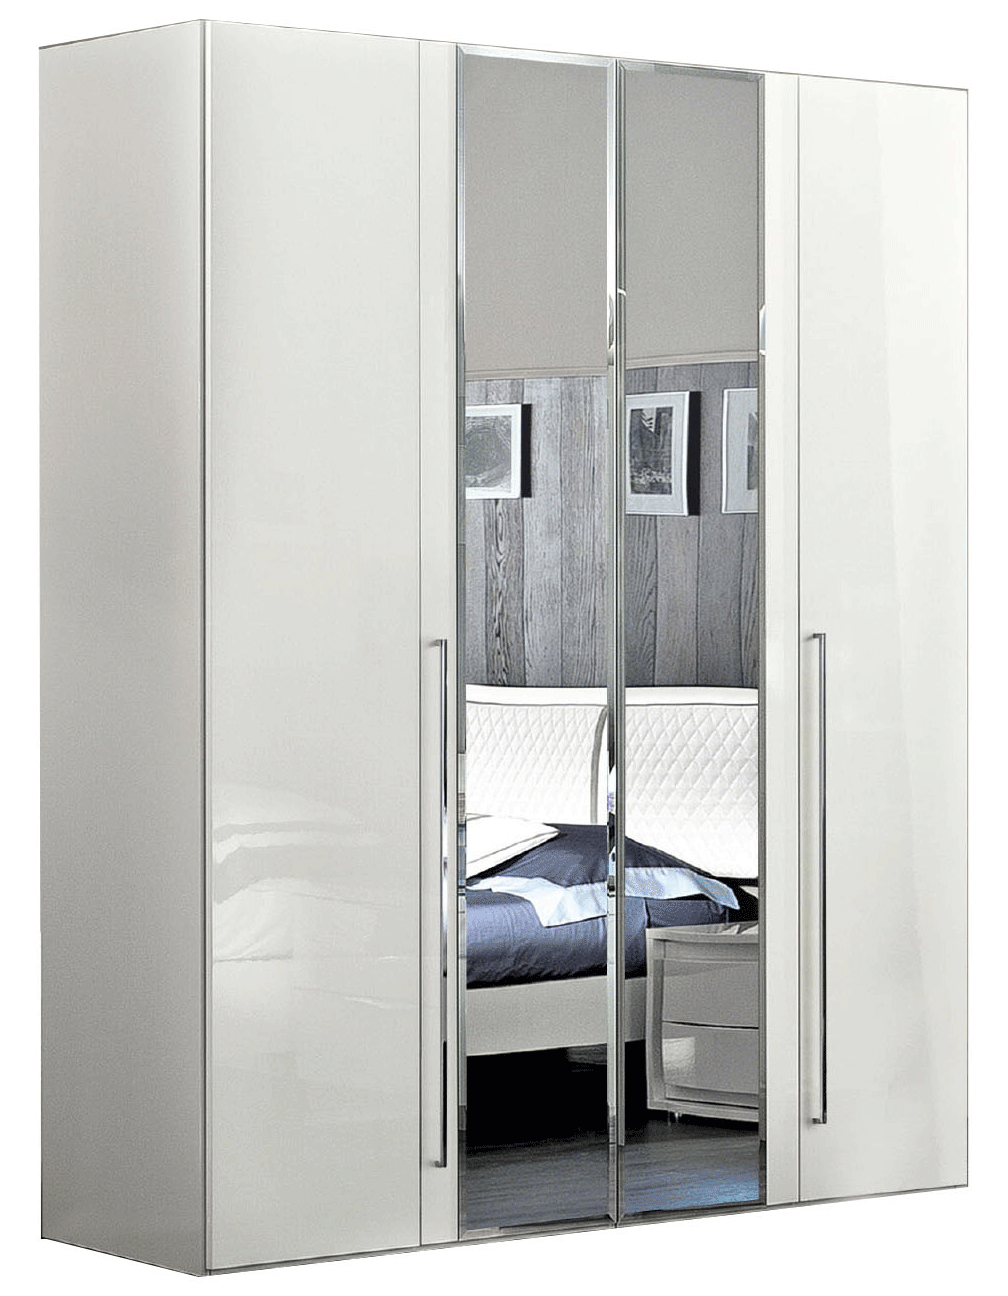 Bedroom Furniture Beds with storage Dama Bianca 4 Door Glass Doors Wardrobe White